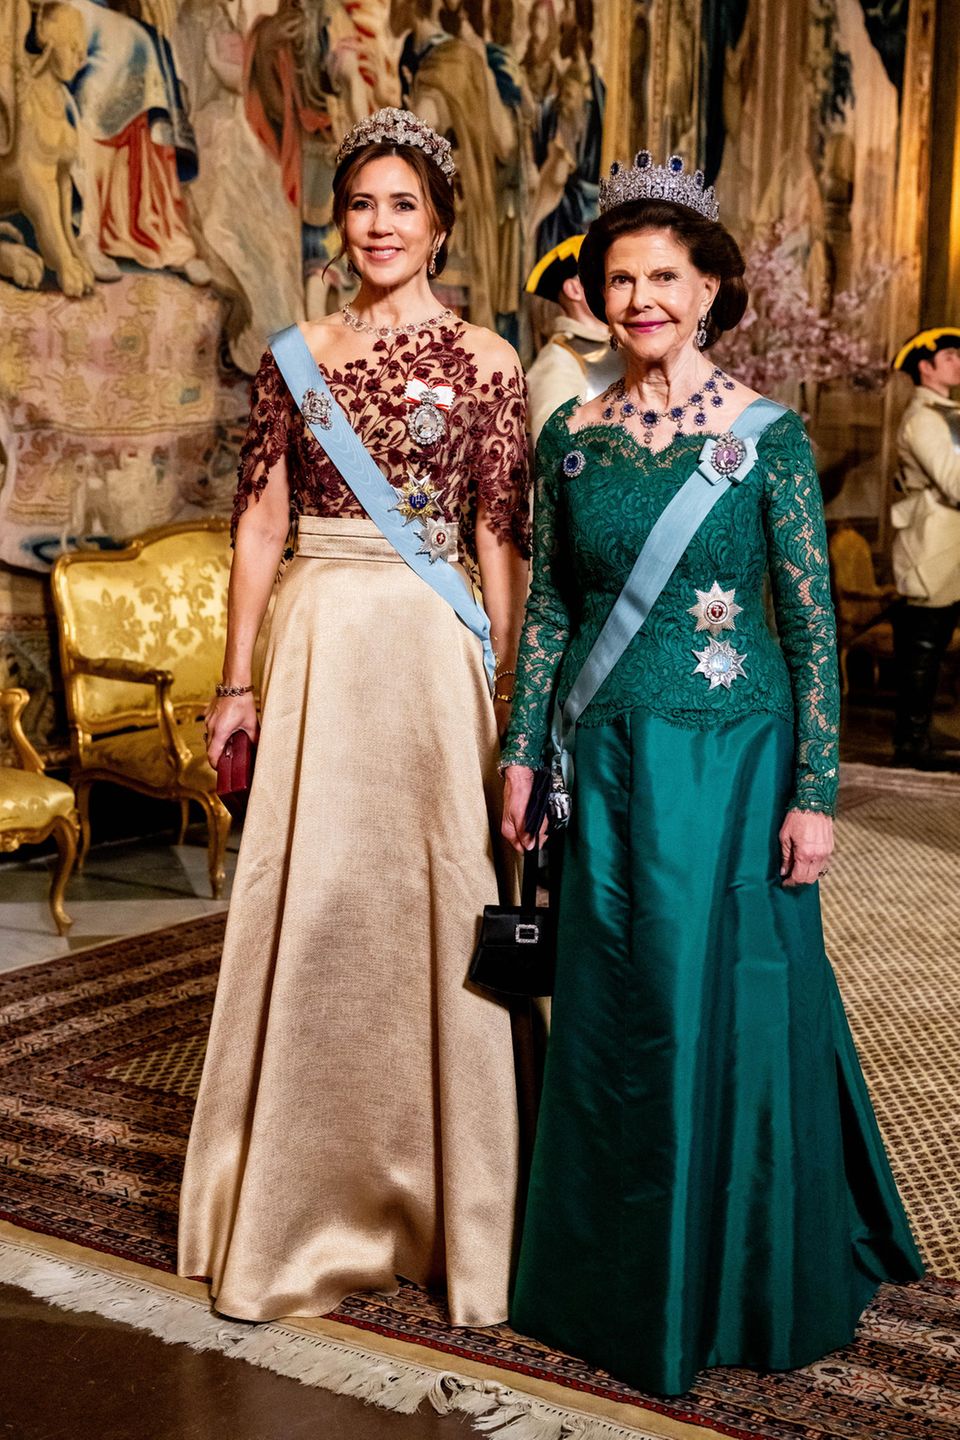 Beim Staatsbankett in Schweden, zu Ehren des dänischen Königspaares, strahlen Königin Mary und Königin Silvia in ihren prächtigen Roben. Als Ehrengästin trägt Königin Mary einen goldenen Seidenrock, den sie mit einem Oberteil aus rubinroten Verzierungen kombiniert. Passend zum Rubinrot verziert die Ruby Parure Tiara das Haupt der dänischen Königin und verpasst ihr ein majestätisches Auftreten. Königin Silvia hingegen glänzt in einem smaragdgrünen Spitzenkleid von "Georg et Arend", das sie elegant mit blauen Saphiren in ihrer Leuchtenberg-Saphir-Tiara und ihrem Halsschmuck kombiniert. Beide Königinnen verkörpern nicht nur Eleganz, sondern auch die wertvollen Verbindungen zwischen ihren Nationen, was die Pracht dieses besonderen Anlasses unterstreicht.